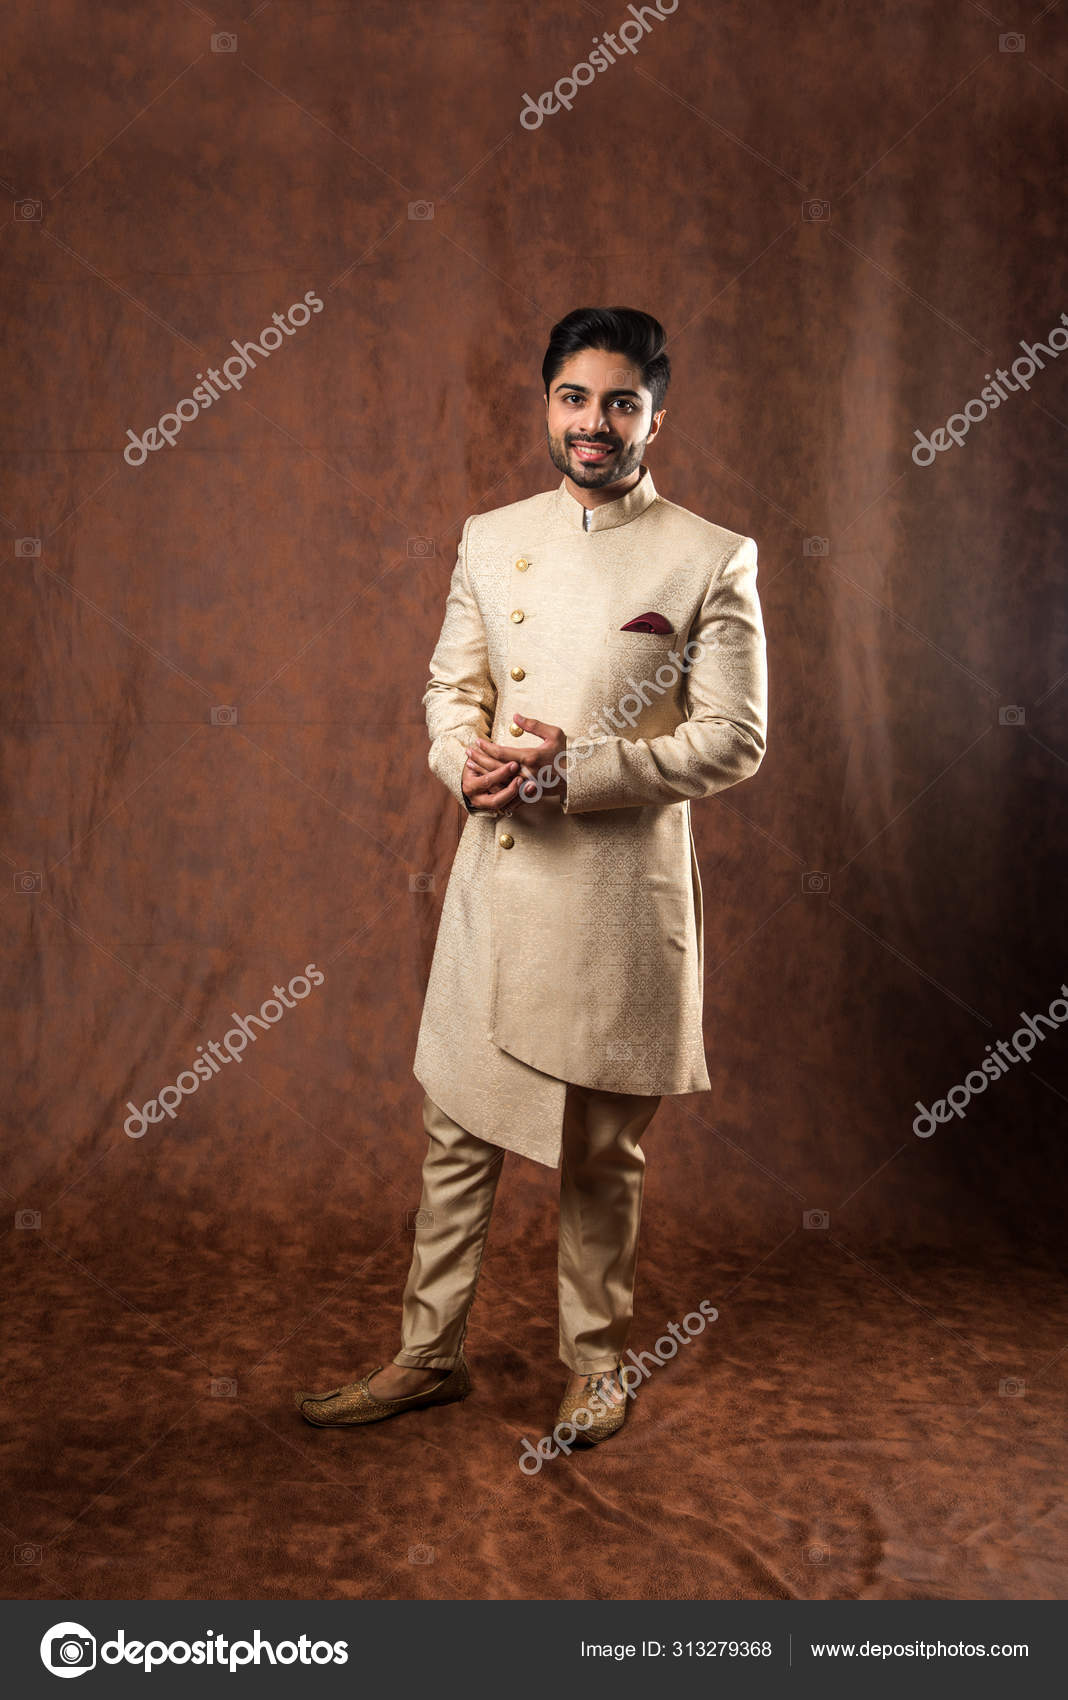 Classy And Ethnic Dresses For Men For This Festive Season | Wedding kurta  for men, Groom dress men, Dress suits for men